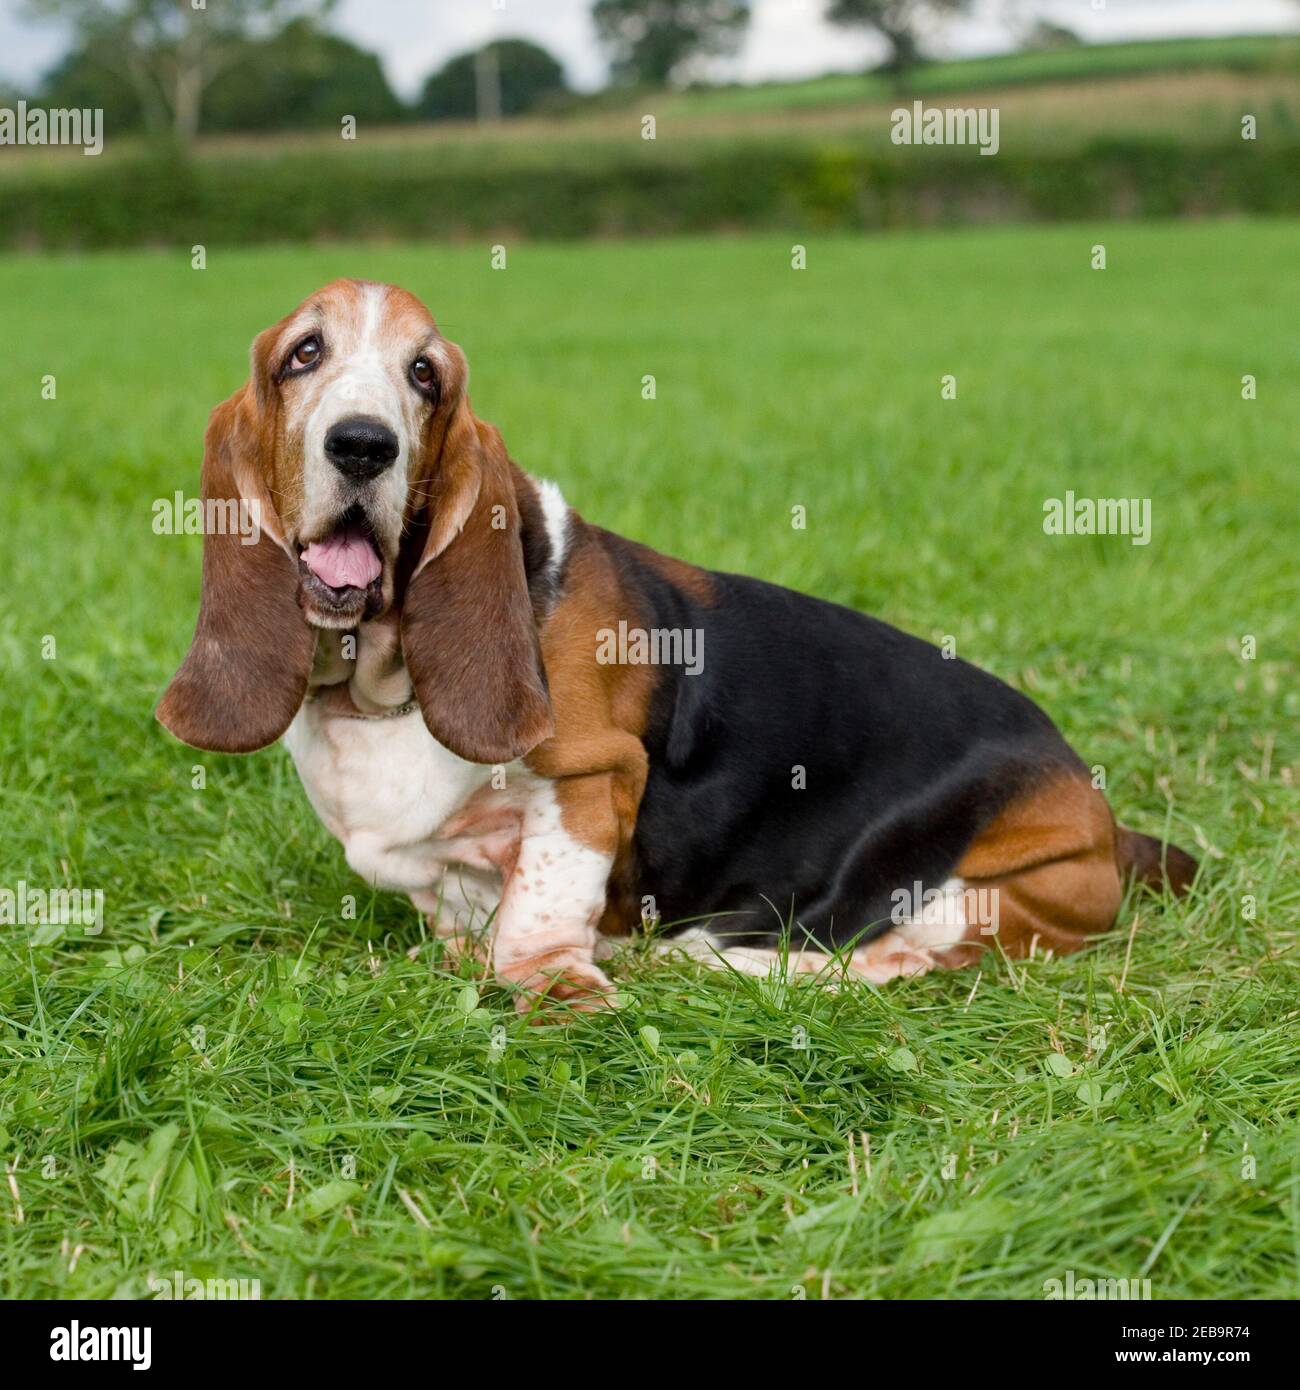 basset hound dog Stock Photo